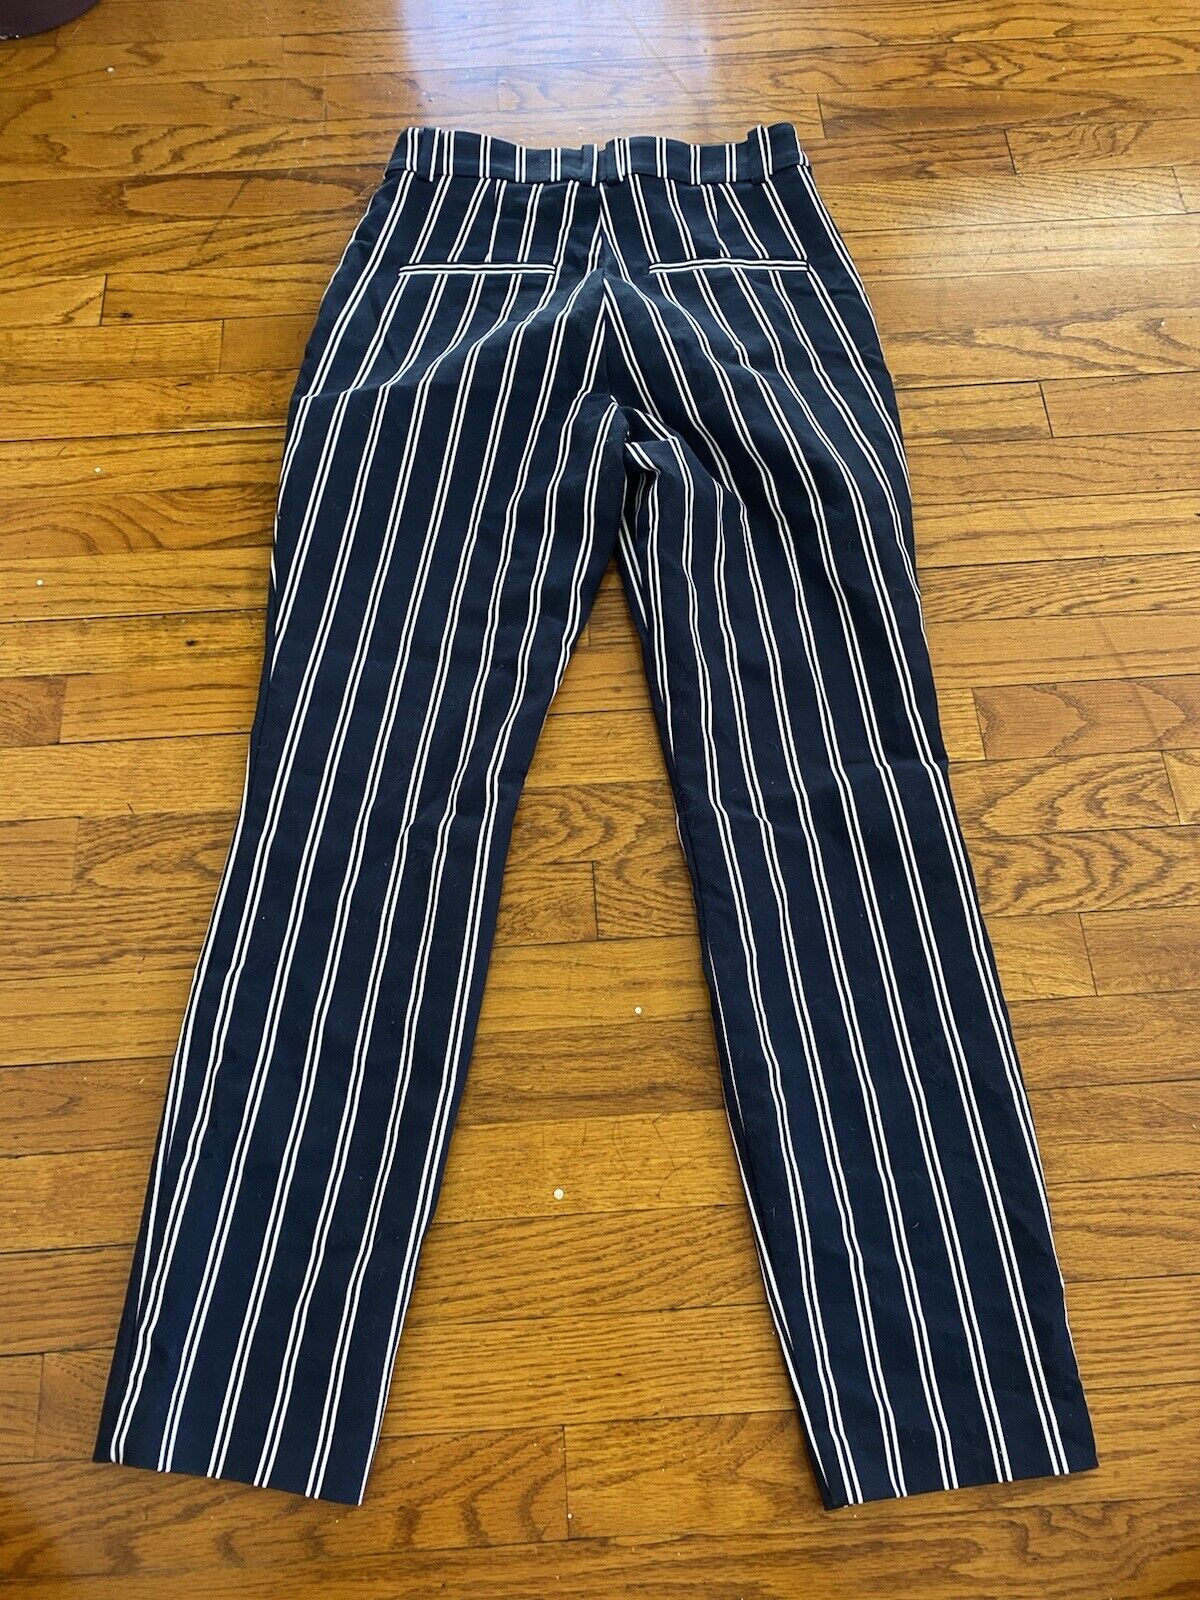 Blue & White Stripe Trousers - H&M - Women’s 4